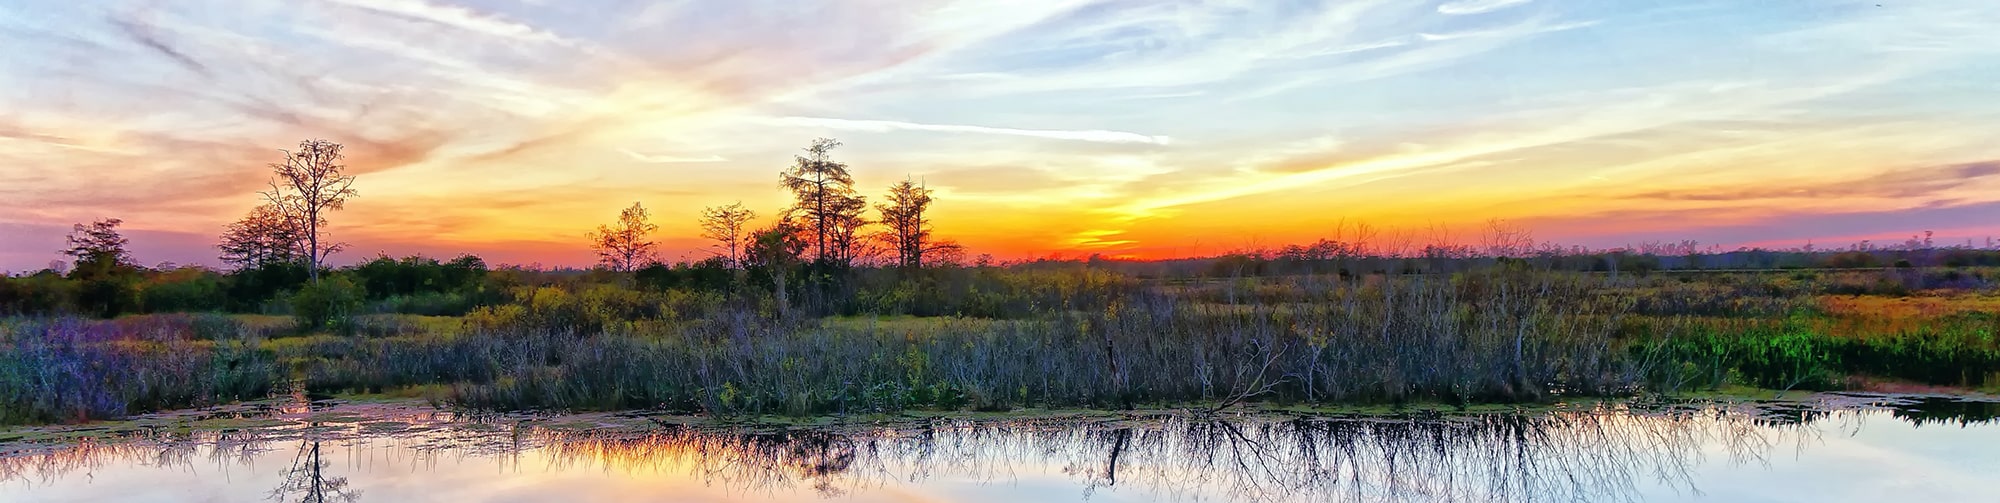 Beautiful Louisiana sunset landscape